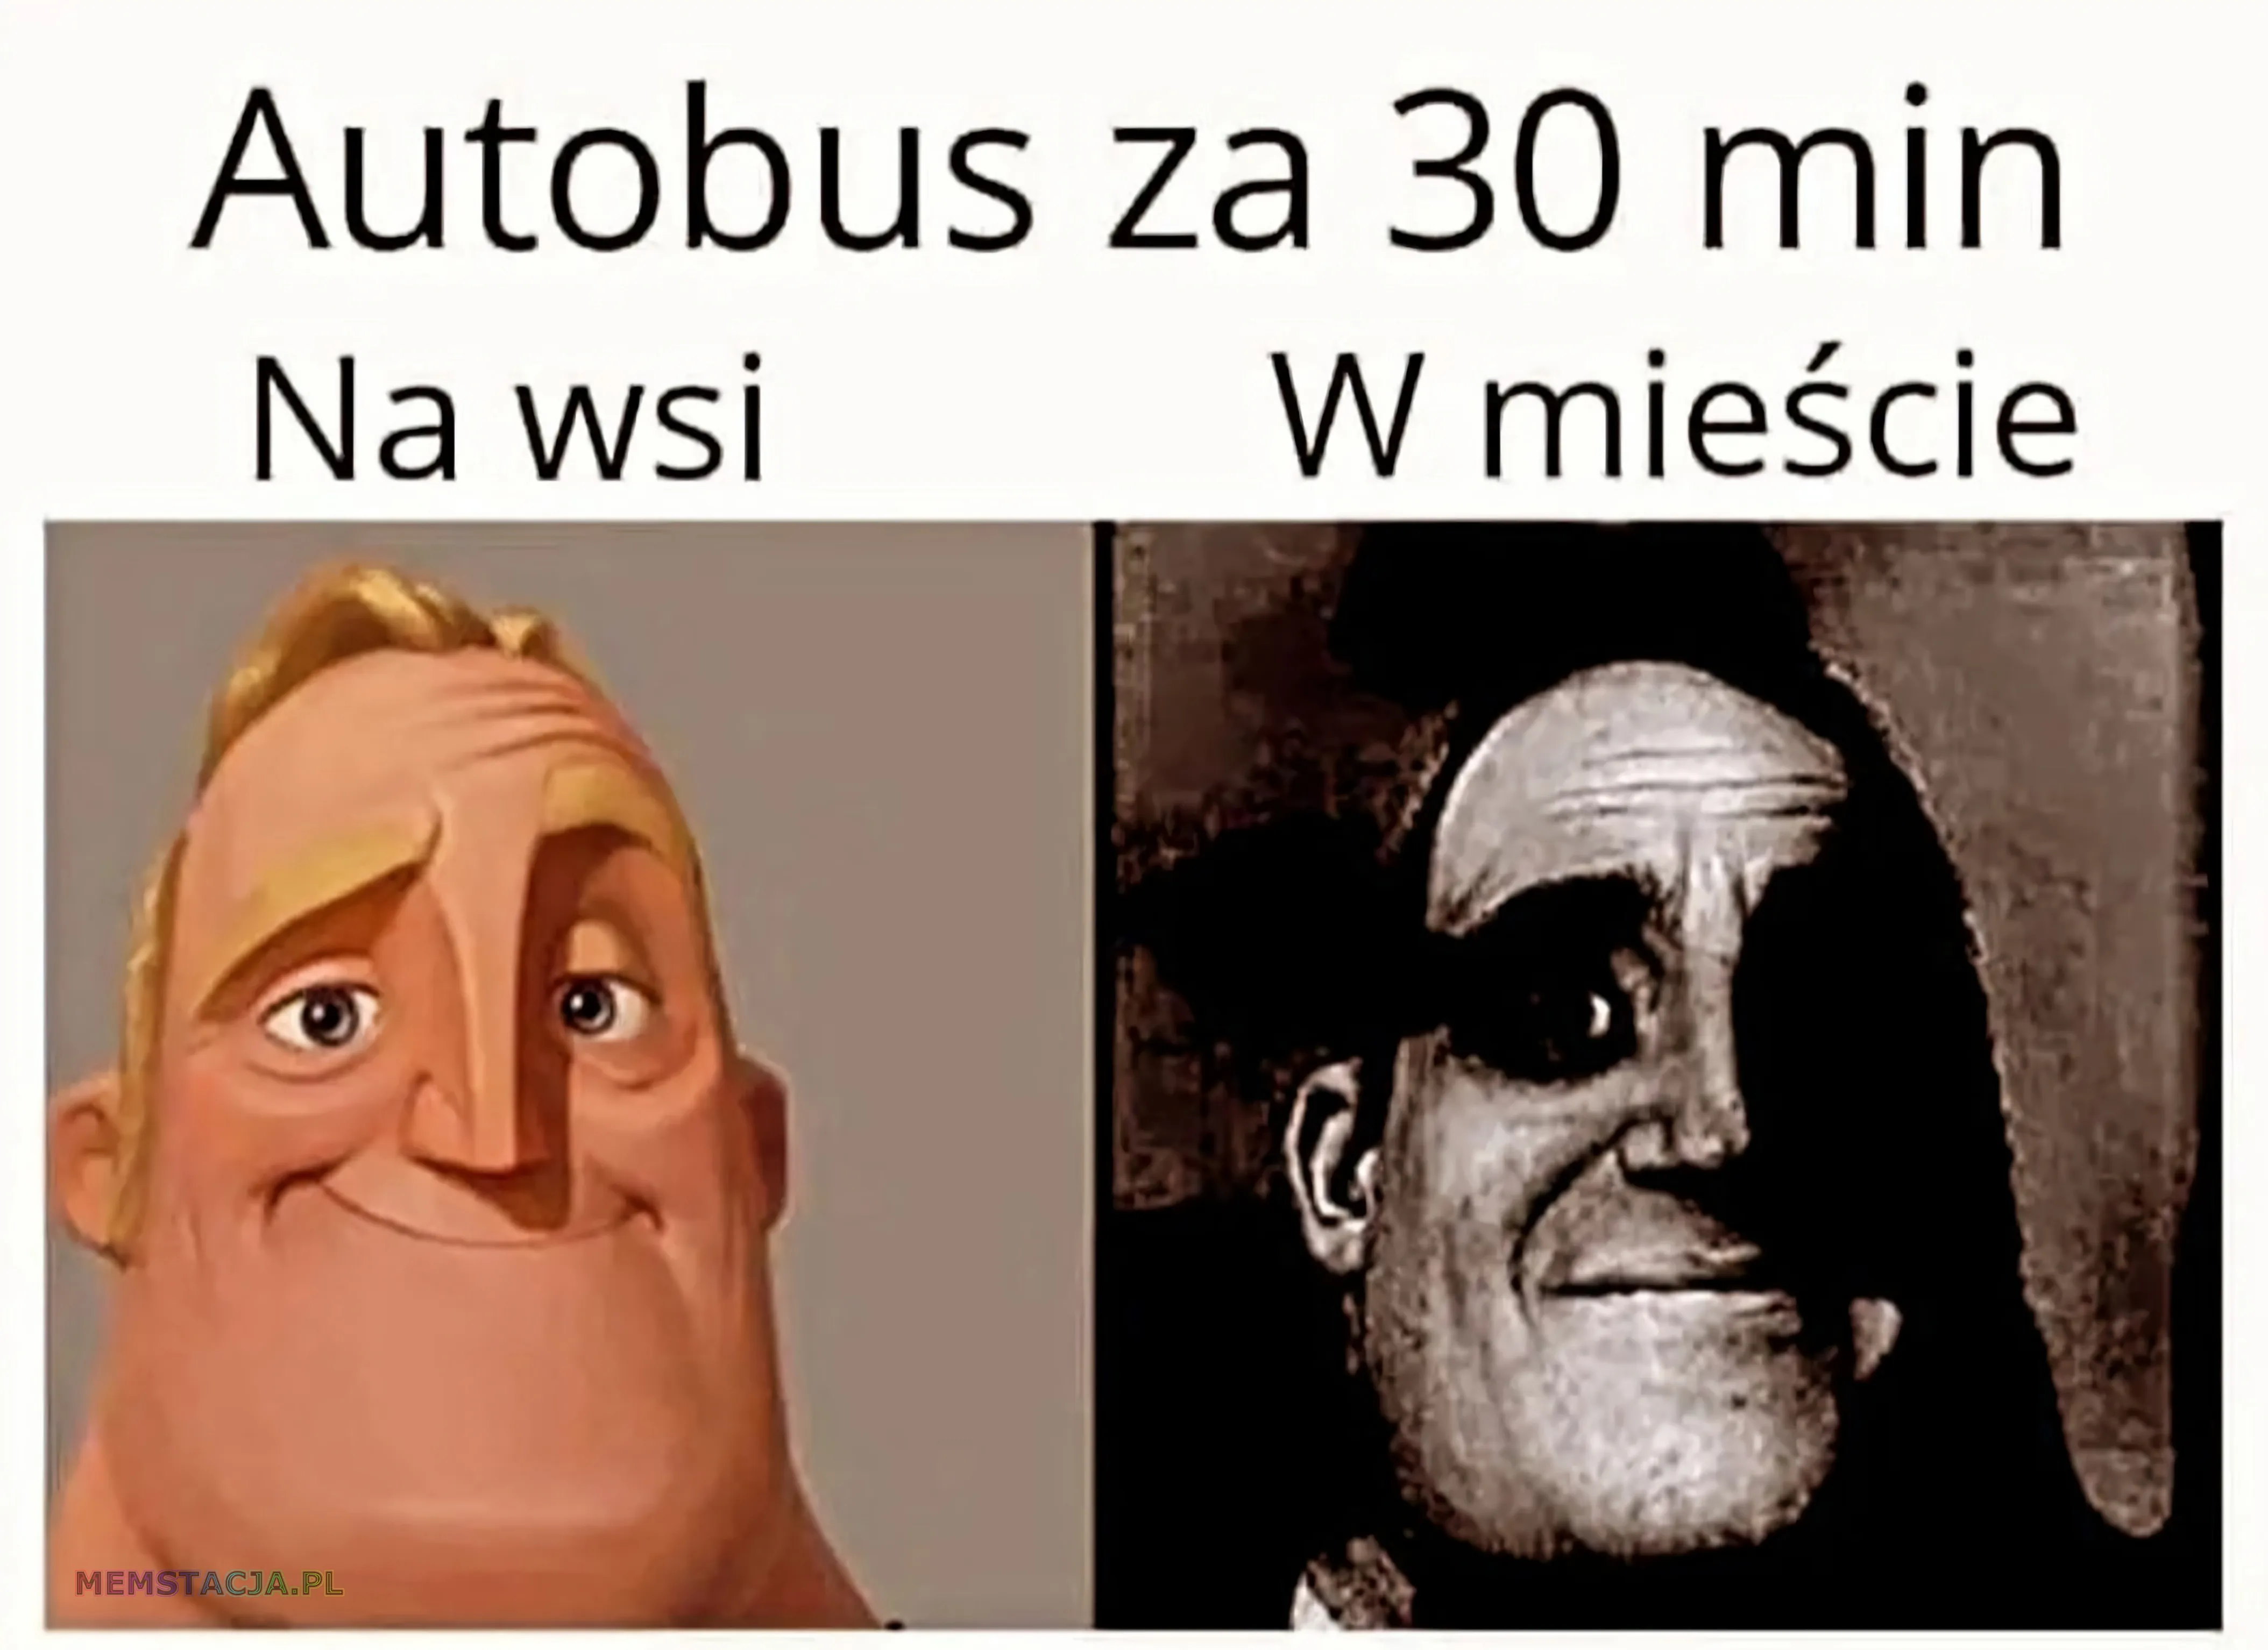 Mem przedstawiający dwie postacie: 'Autobus za 30 min'; Na wsi: 'Uśmiechnięta postać'; W mieście: 'Niezadowolona postać'